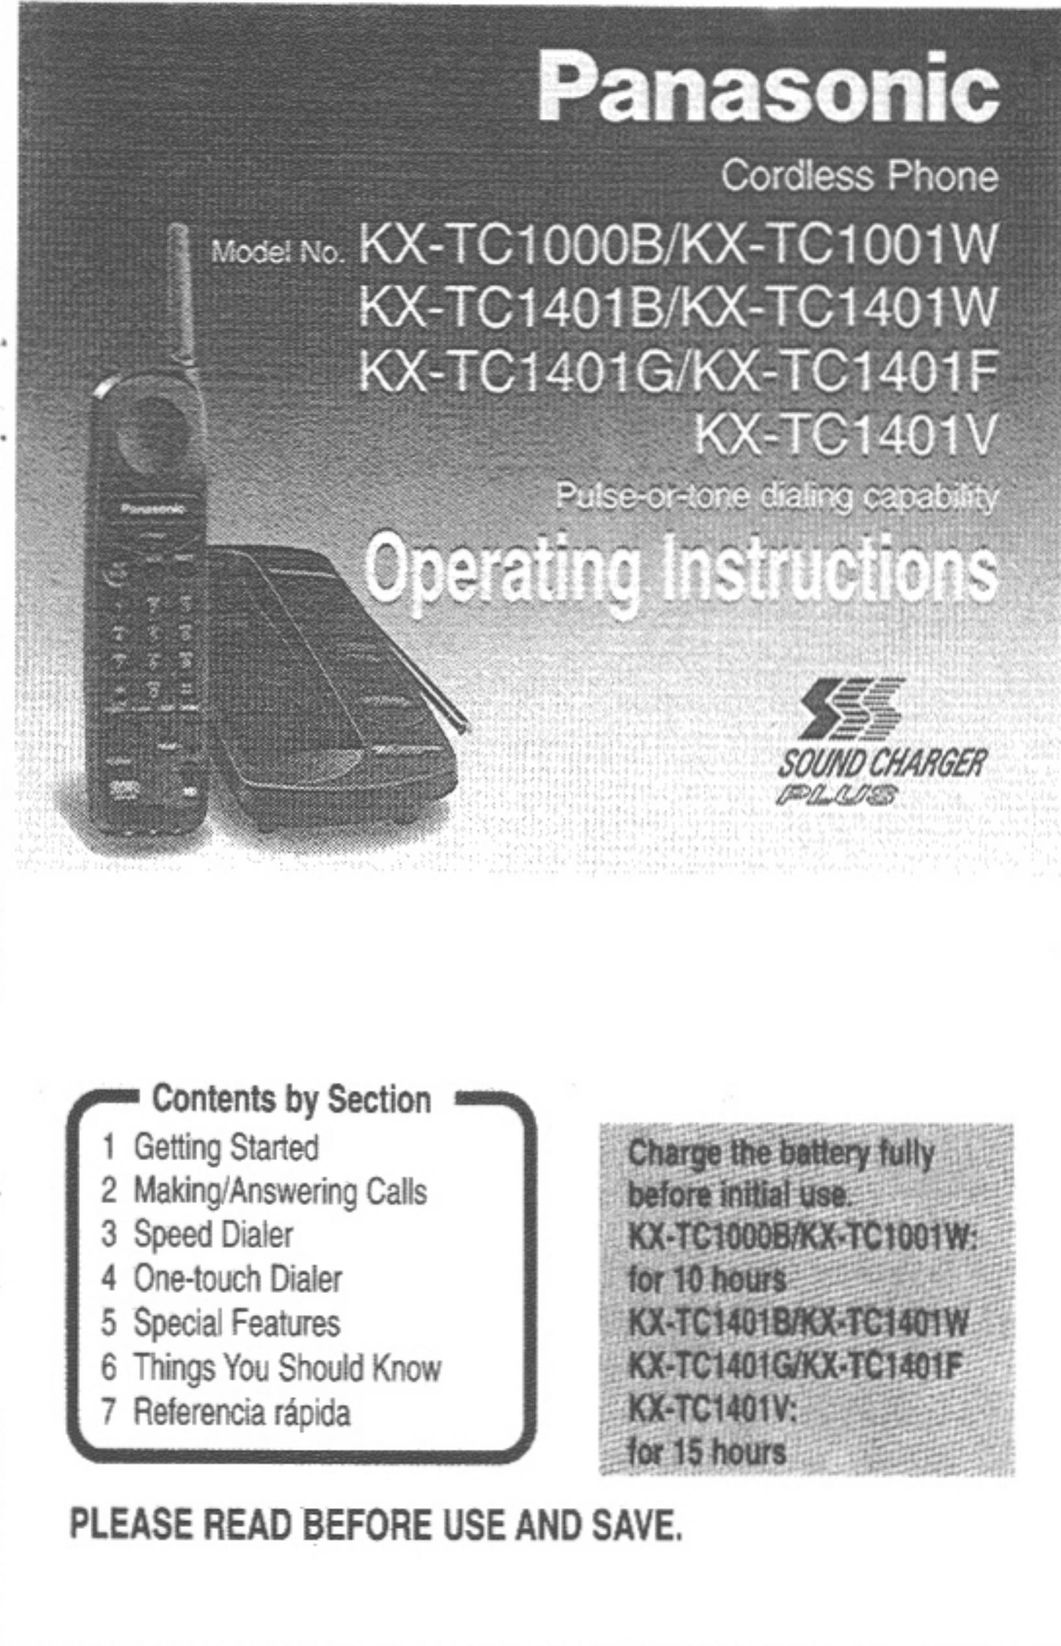 Panasonic KX-TC1000B Cordless Telephone User Manual